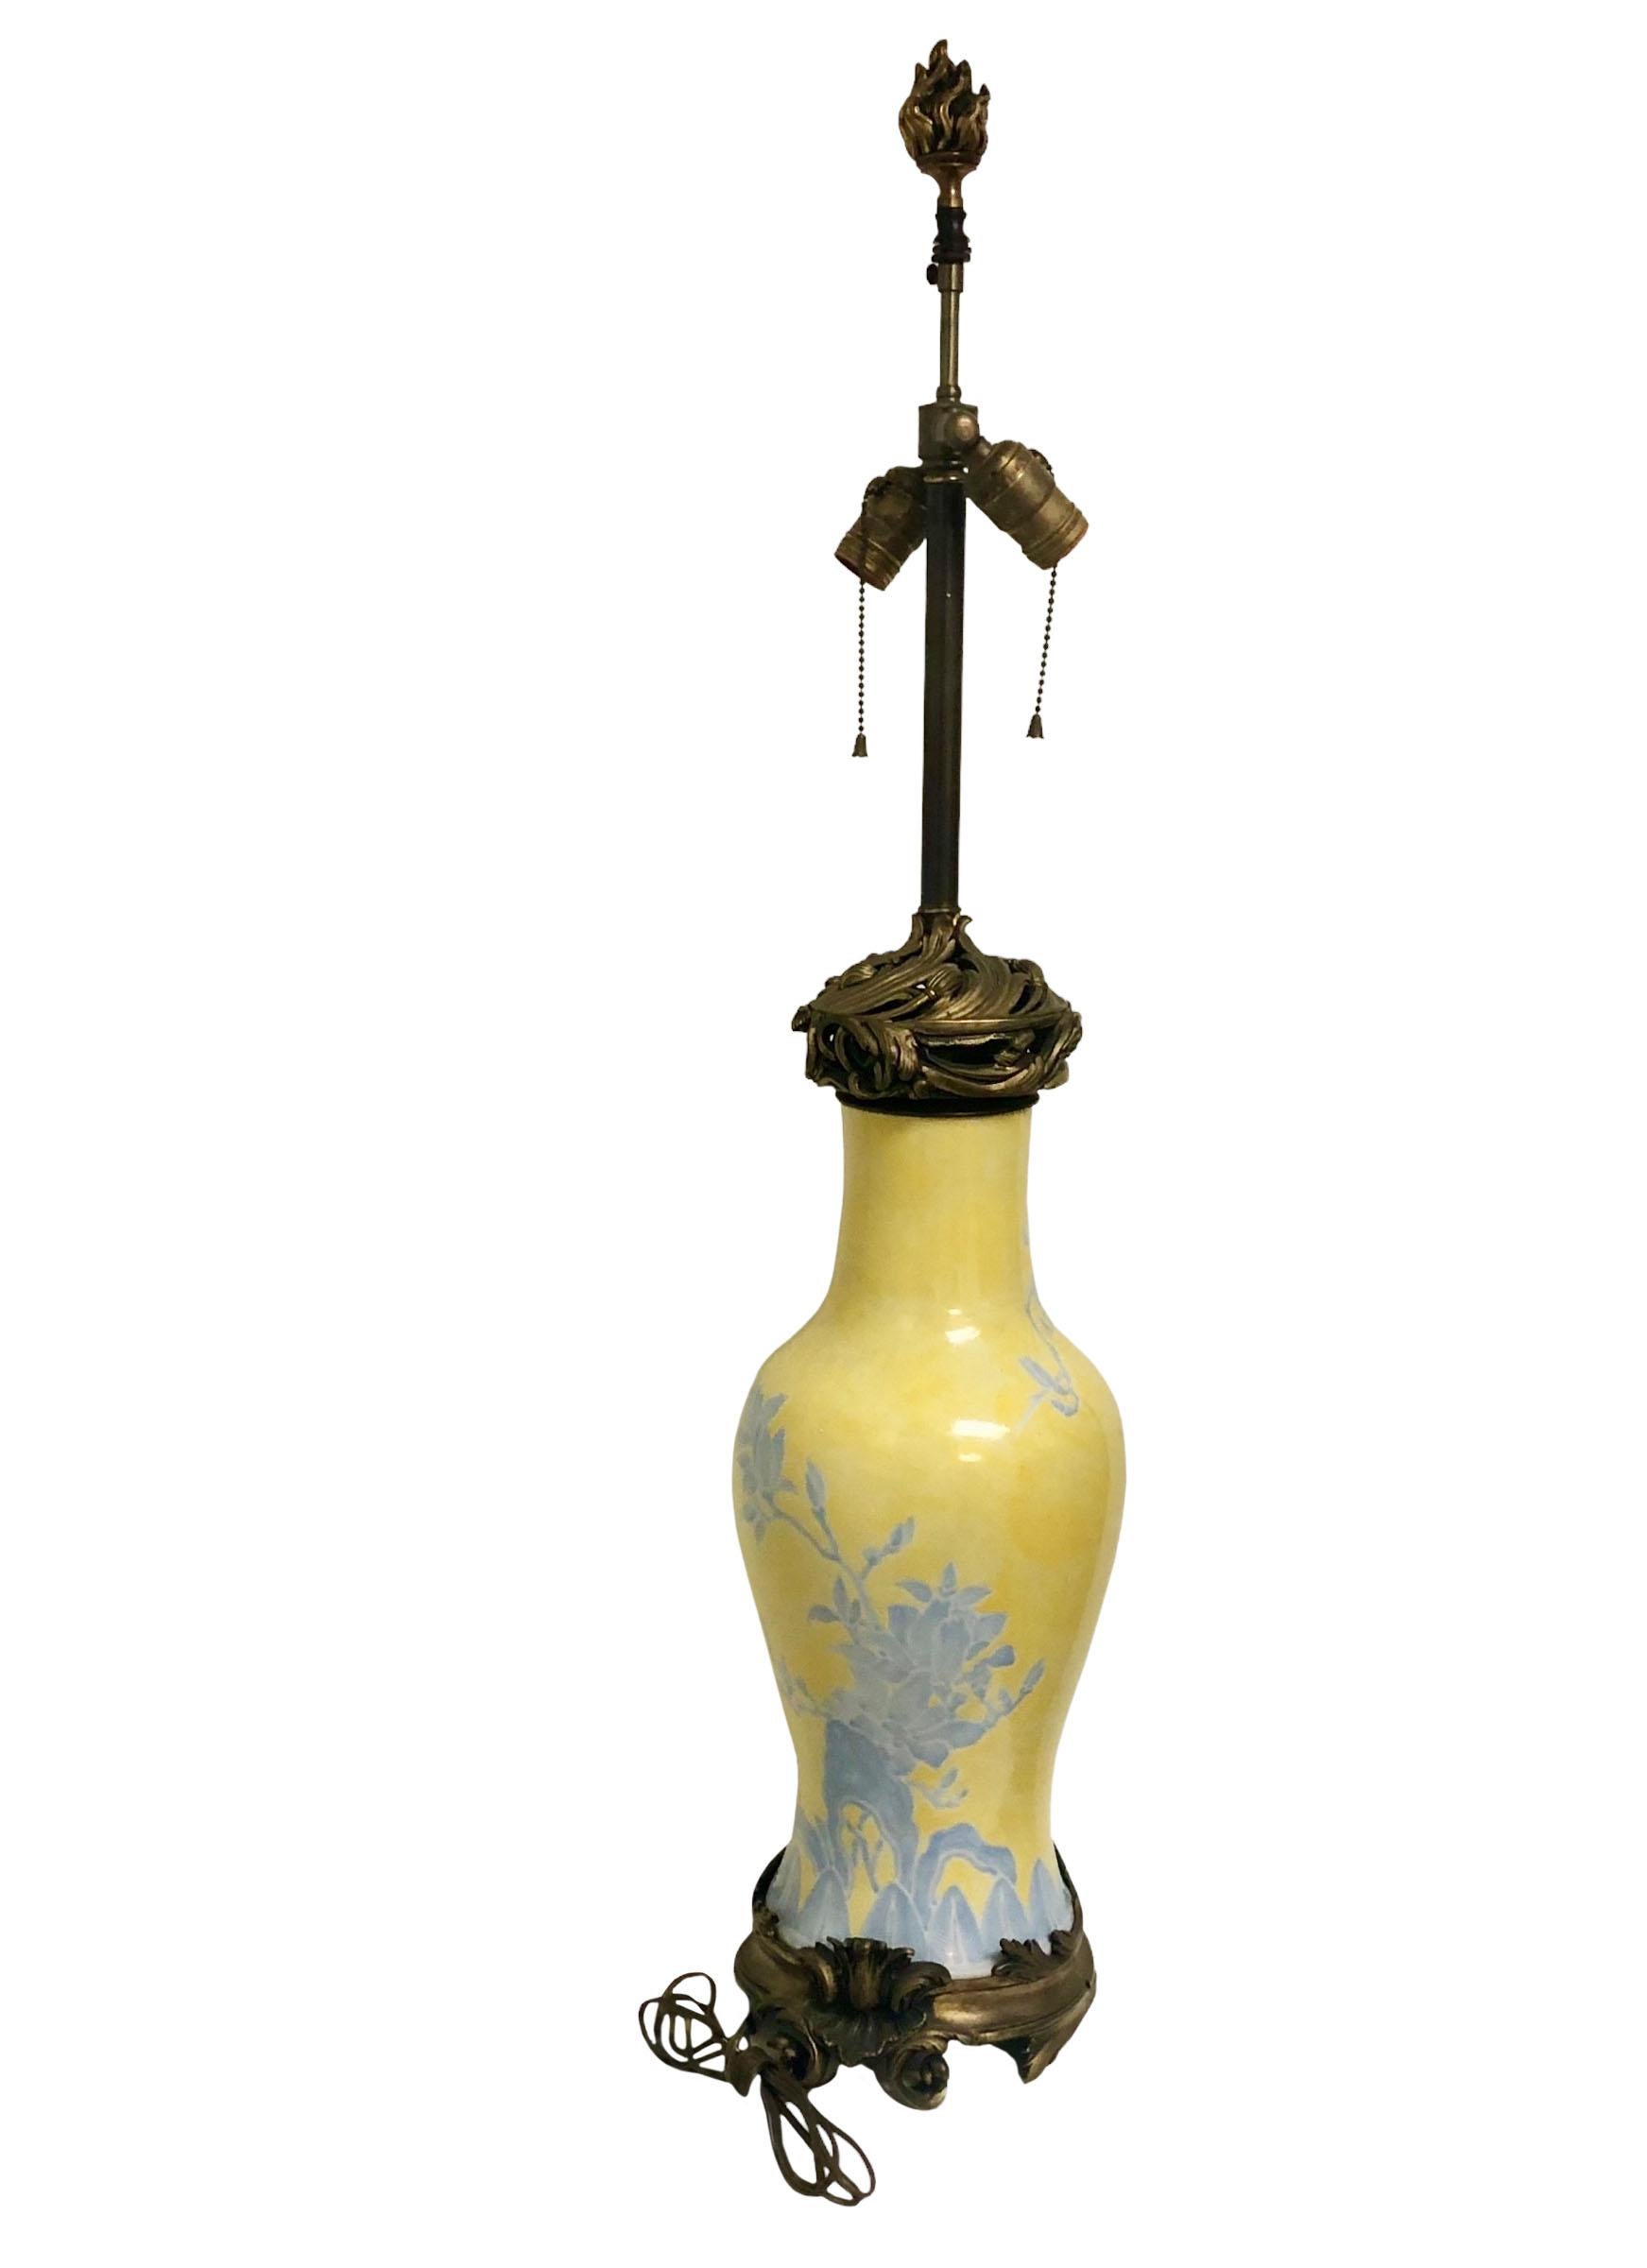 Eine schöne einzelne Rokokolampe. Gelb mit blauen Blumen und Ranken. Der Sockel wurde wahrscheinlich in den 1960er Jahren in Thailand hergestellt, aber die Lampe selbst stammt aus dem 19.